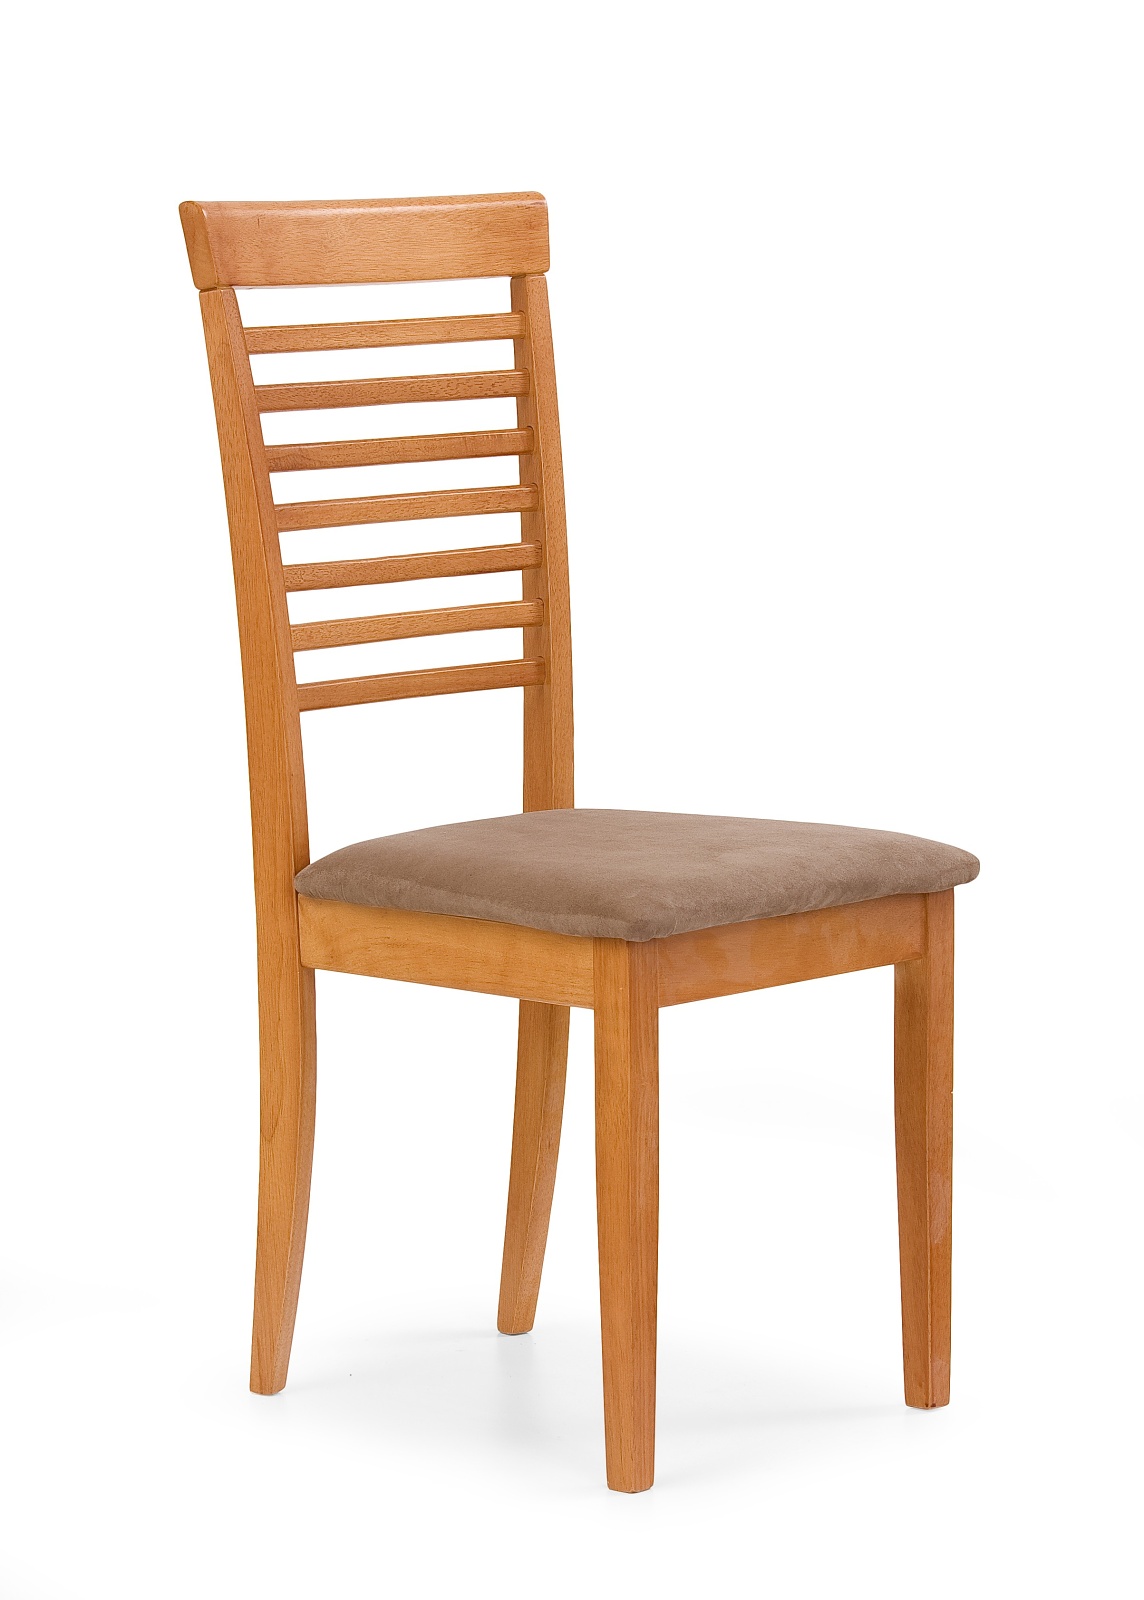 Недорогие стулья с мягким сиденьем. Стул Halmar k220. Стул деревянный. Стулья деревянные с мягким сиденьем. Стул кухонный деревянный.